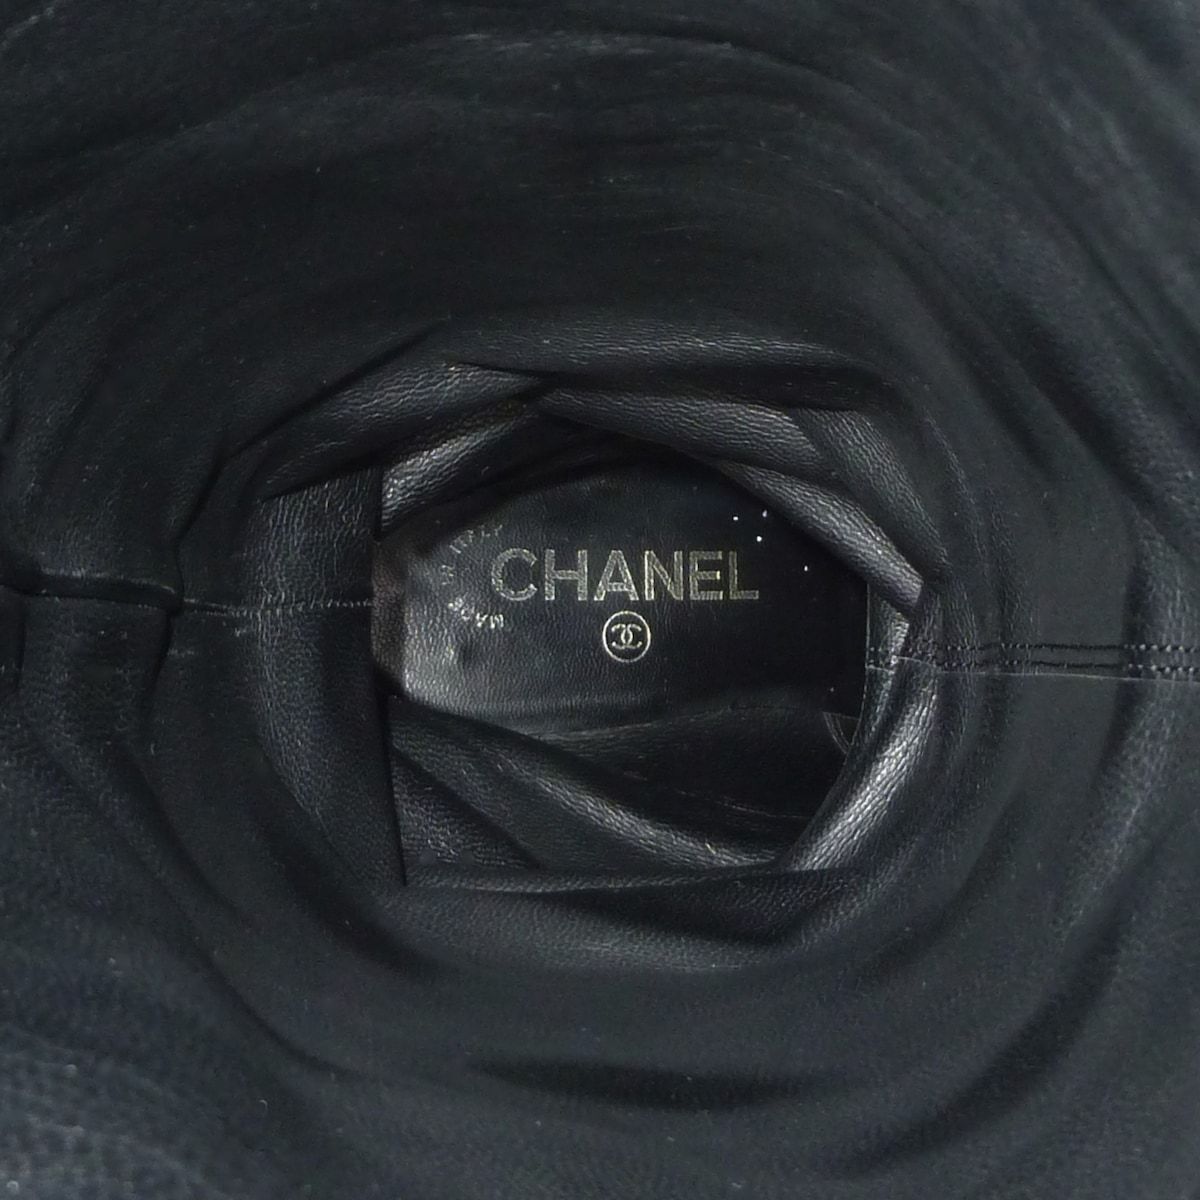 CHANEL(シャネル) ロングブーツ 37 レディース - G26233 黒×ゴールド